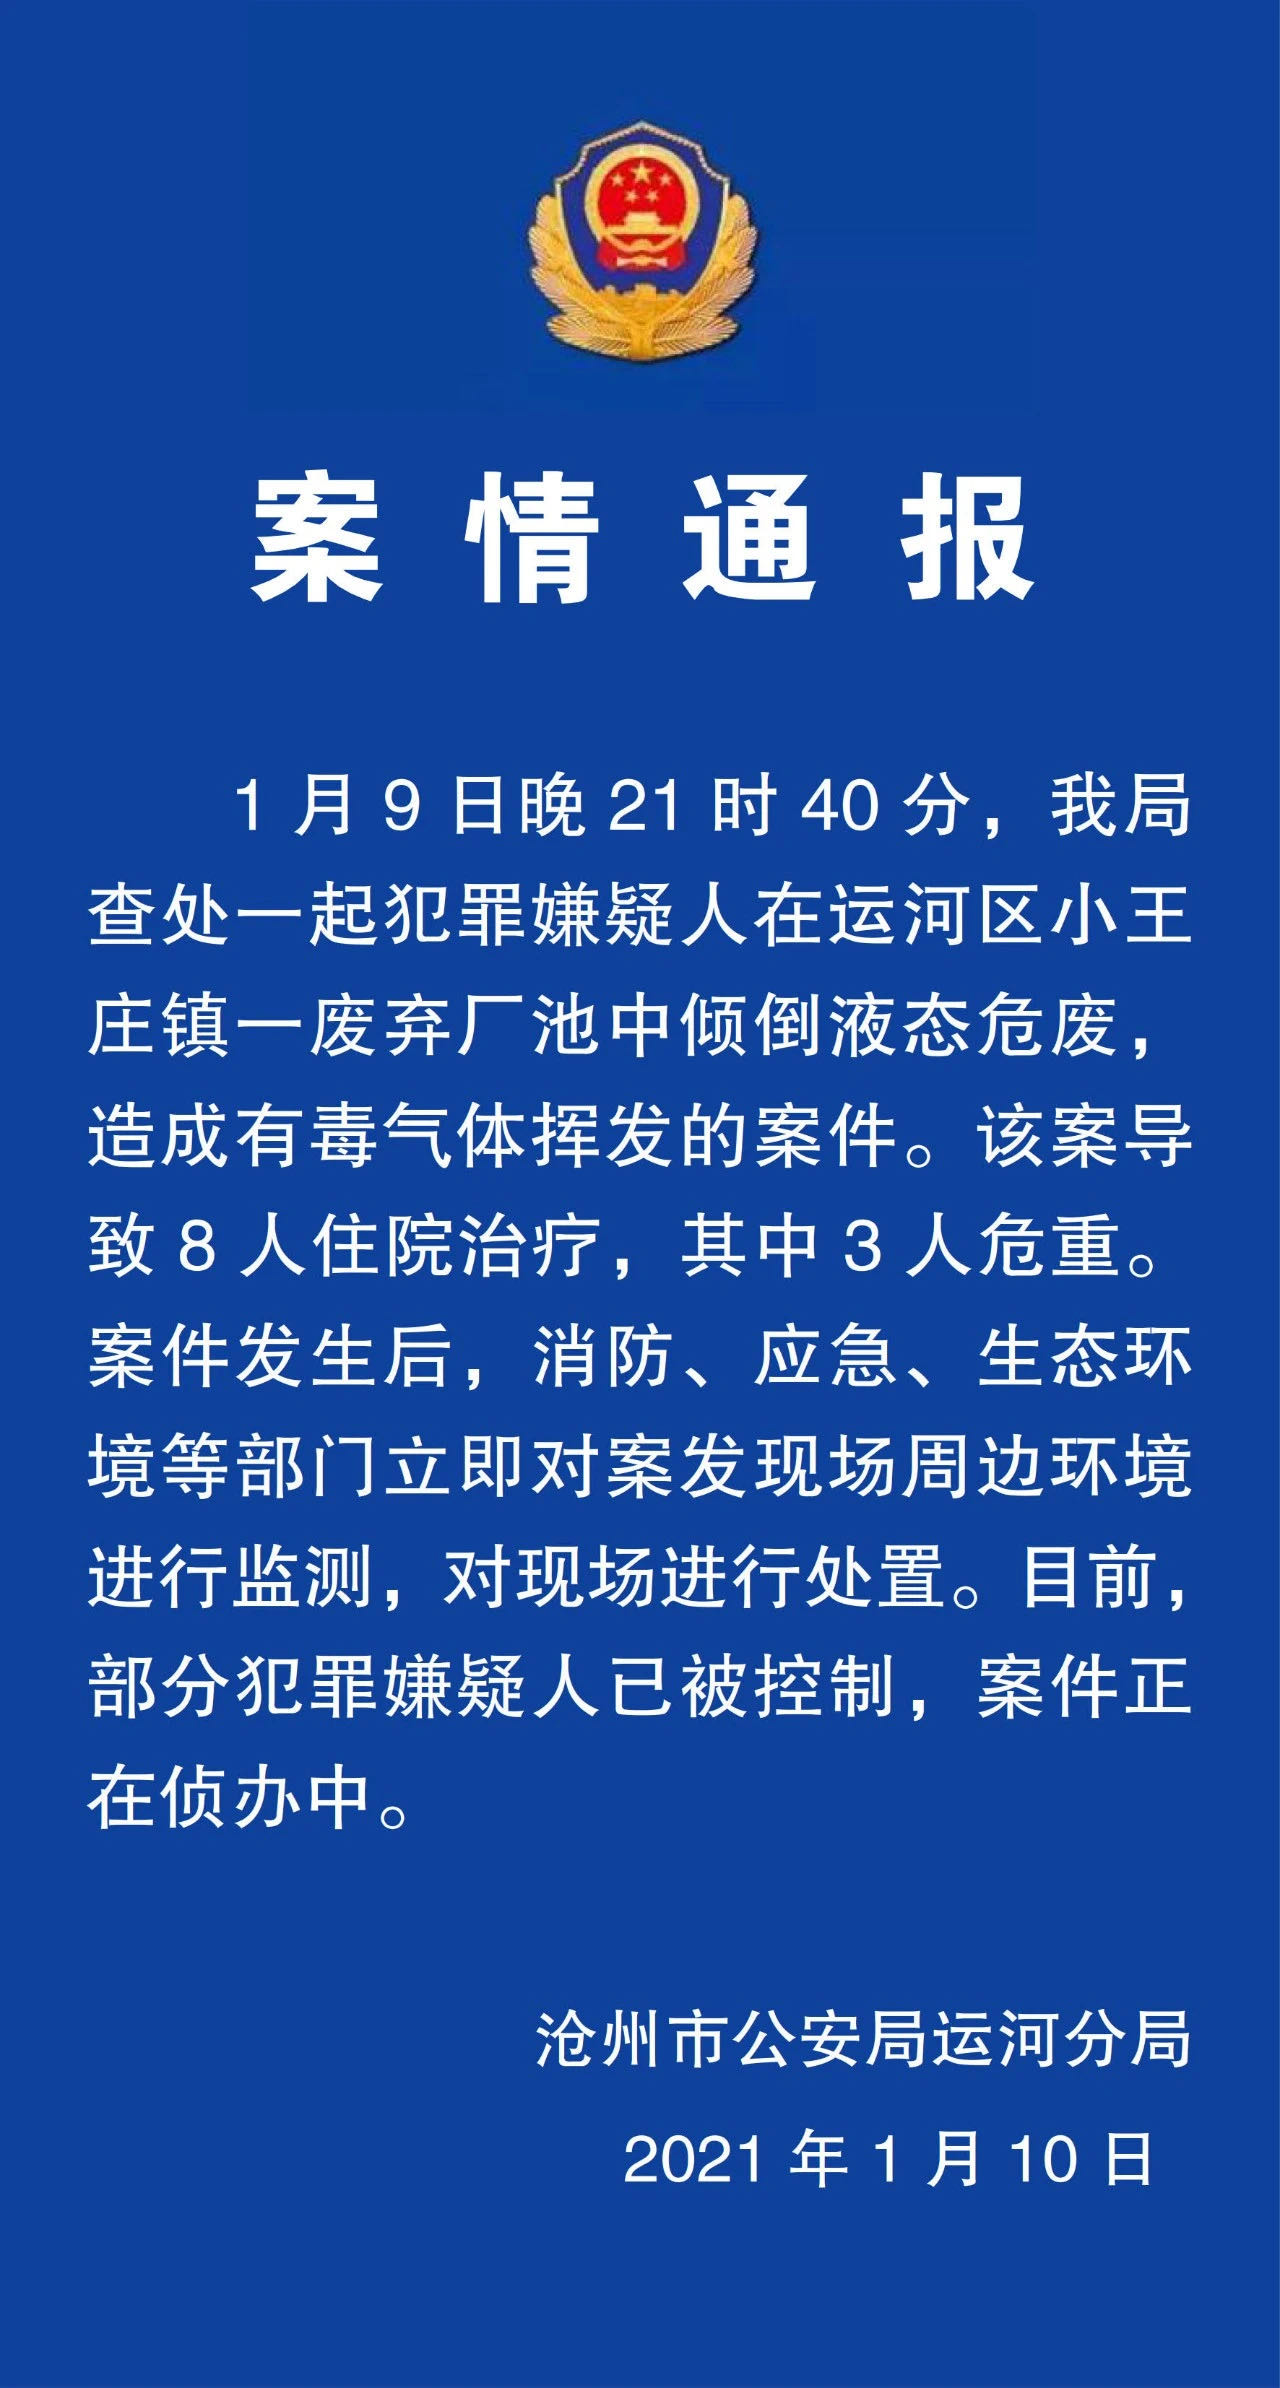 8人住院 河北沧州运河区查处一起倾倒液态危废